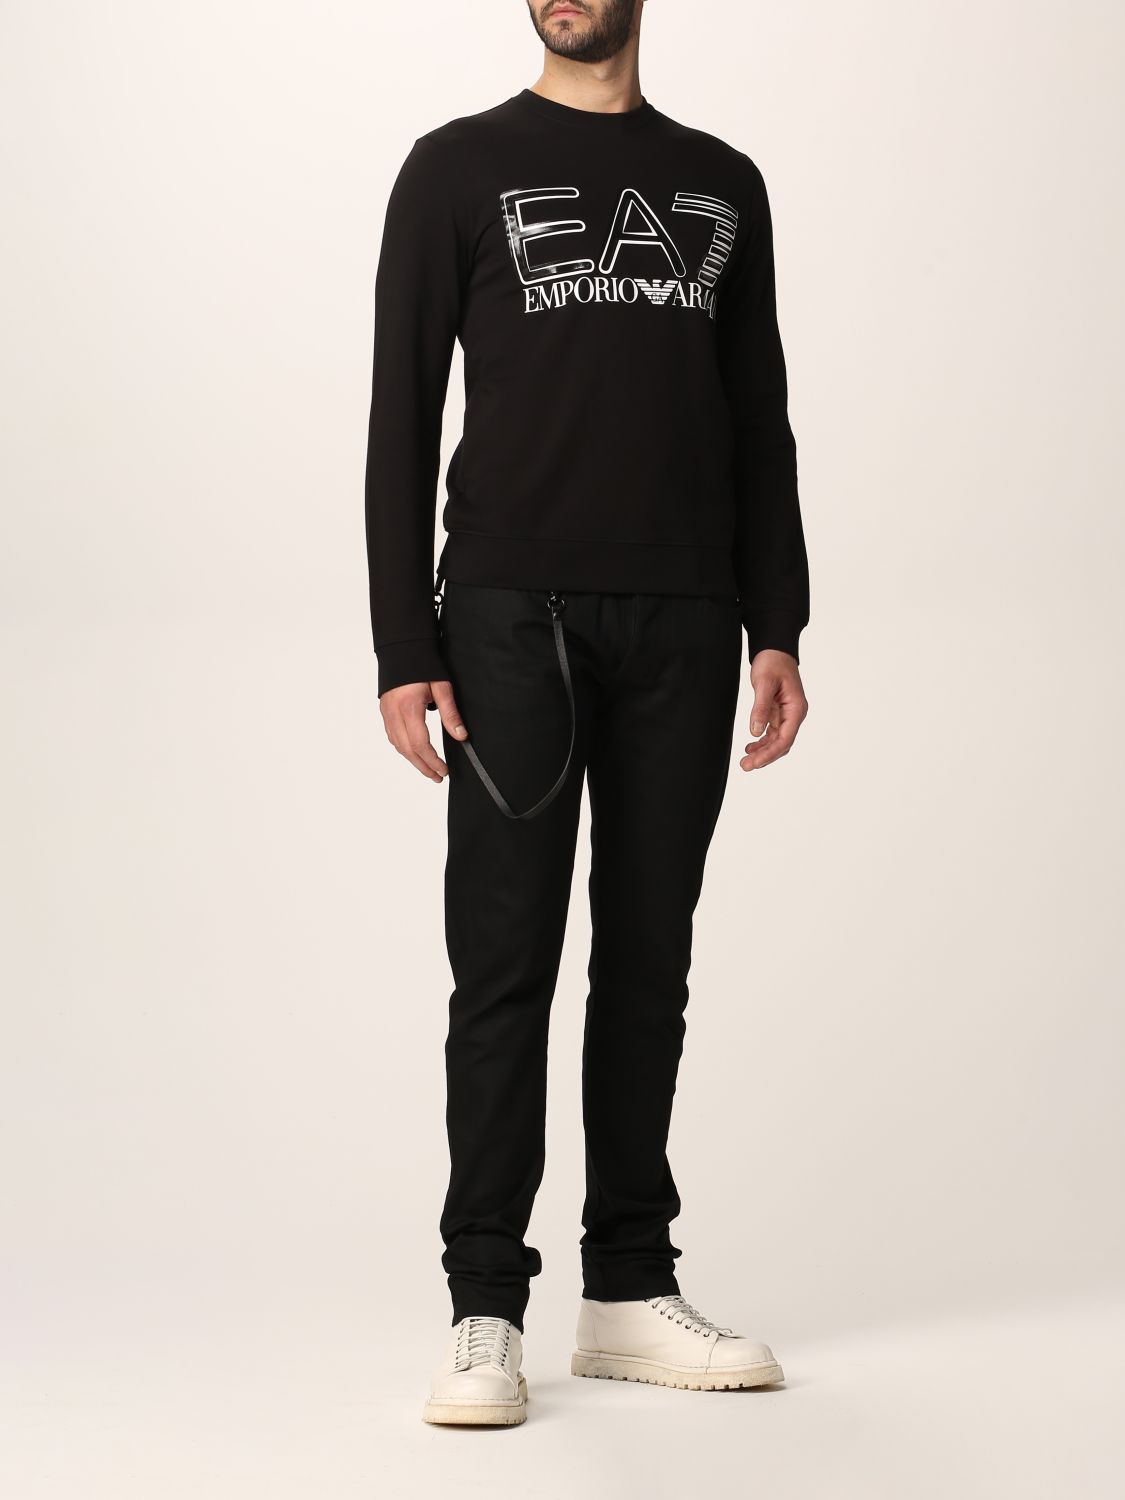 EA7: Logo Series jumper in cotton with logo - Black | Ea7 sweatshirt ...